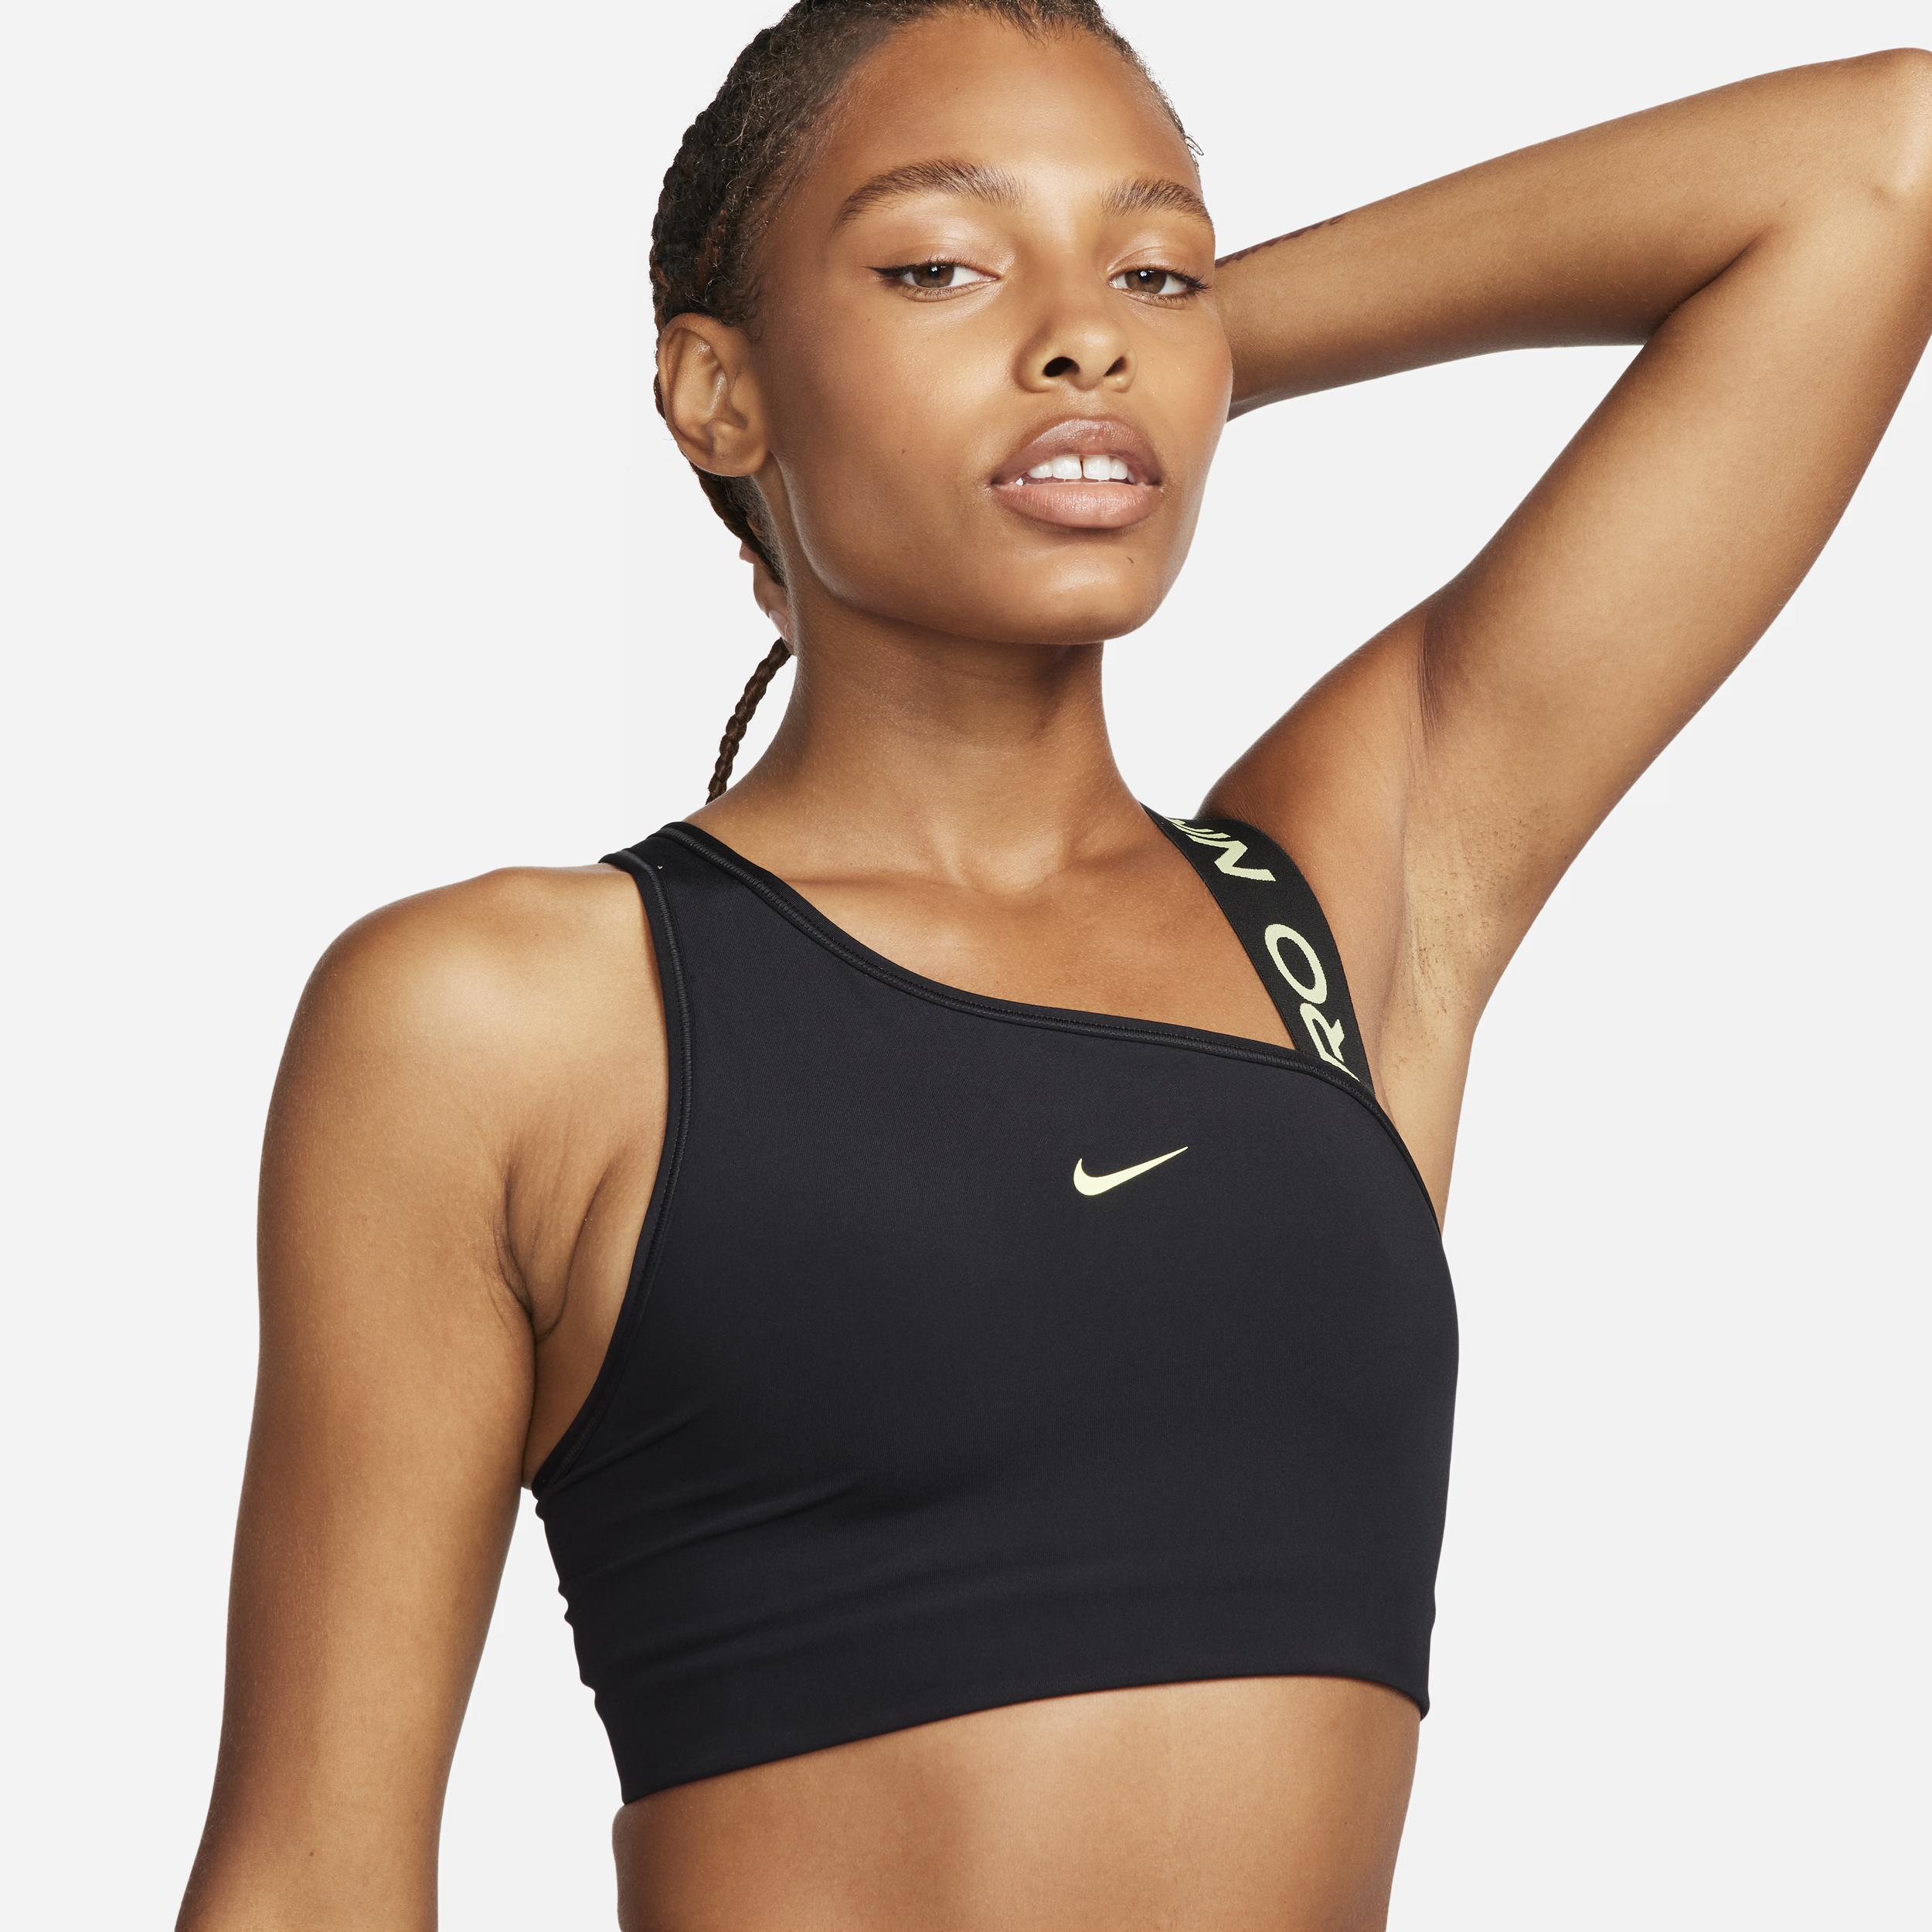 Nike Classic Swoosh Modern Women's Medium Support Sports Bra Black DRI-FIT